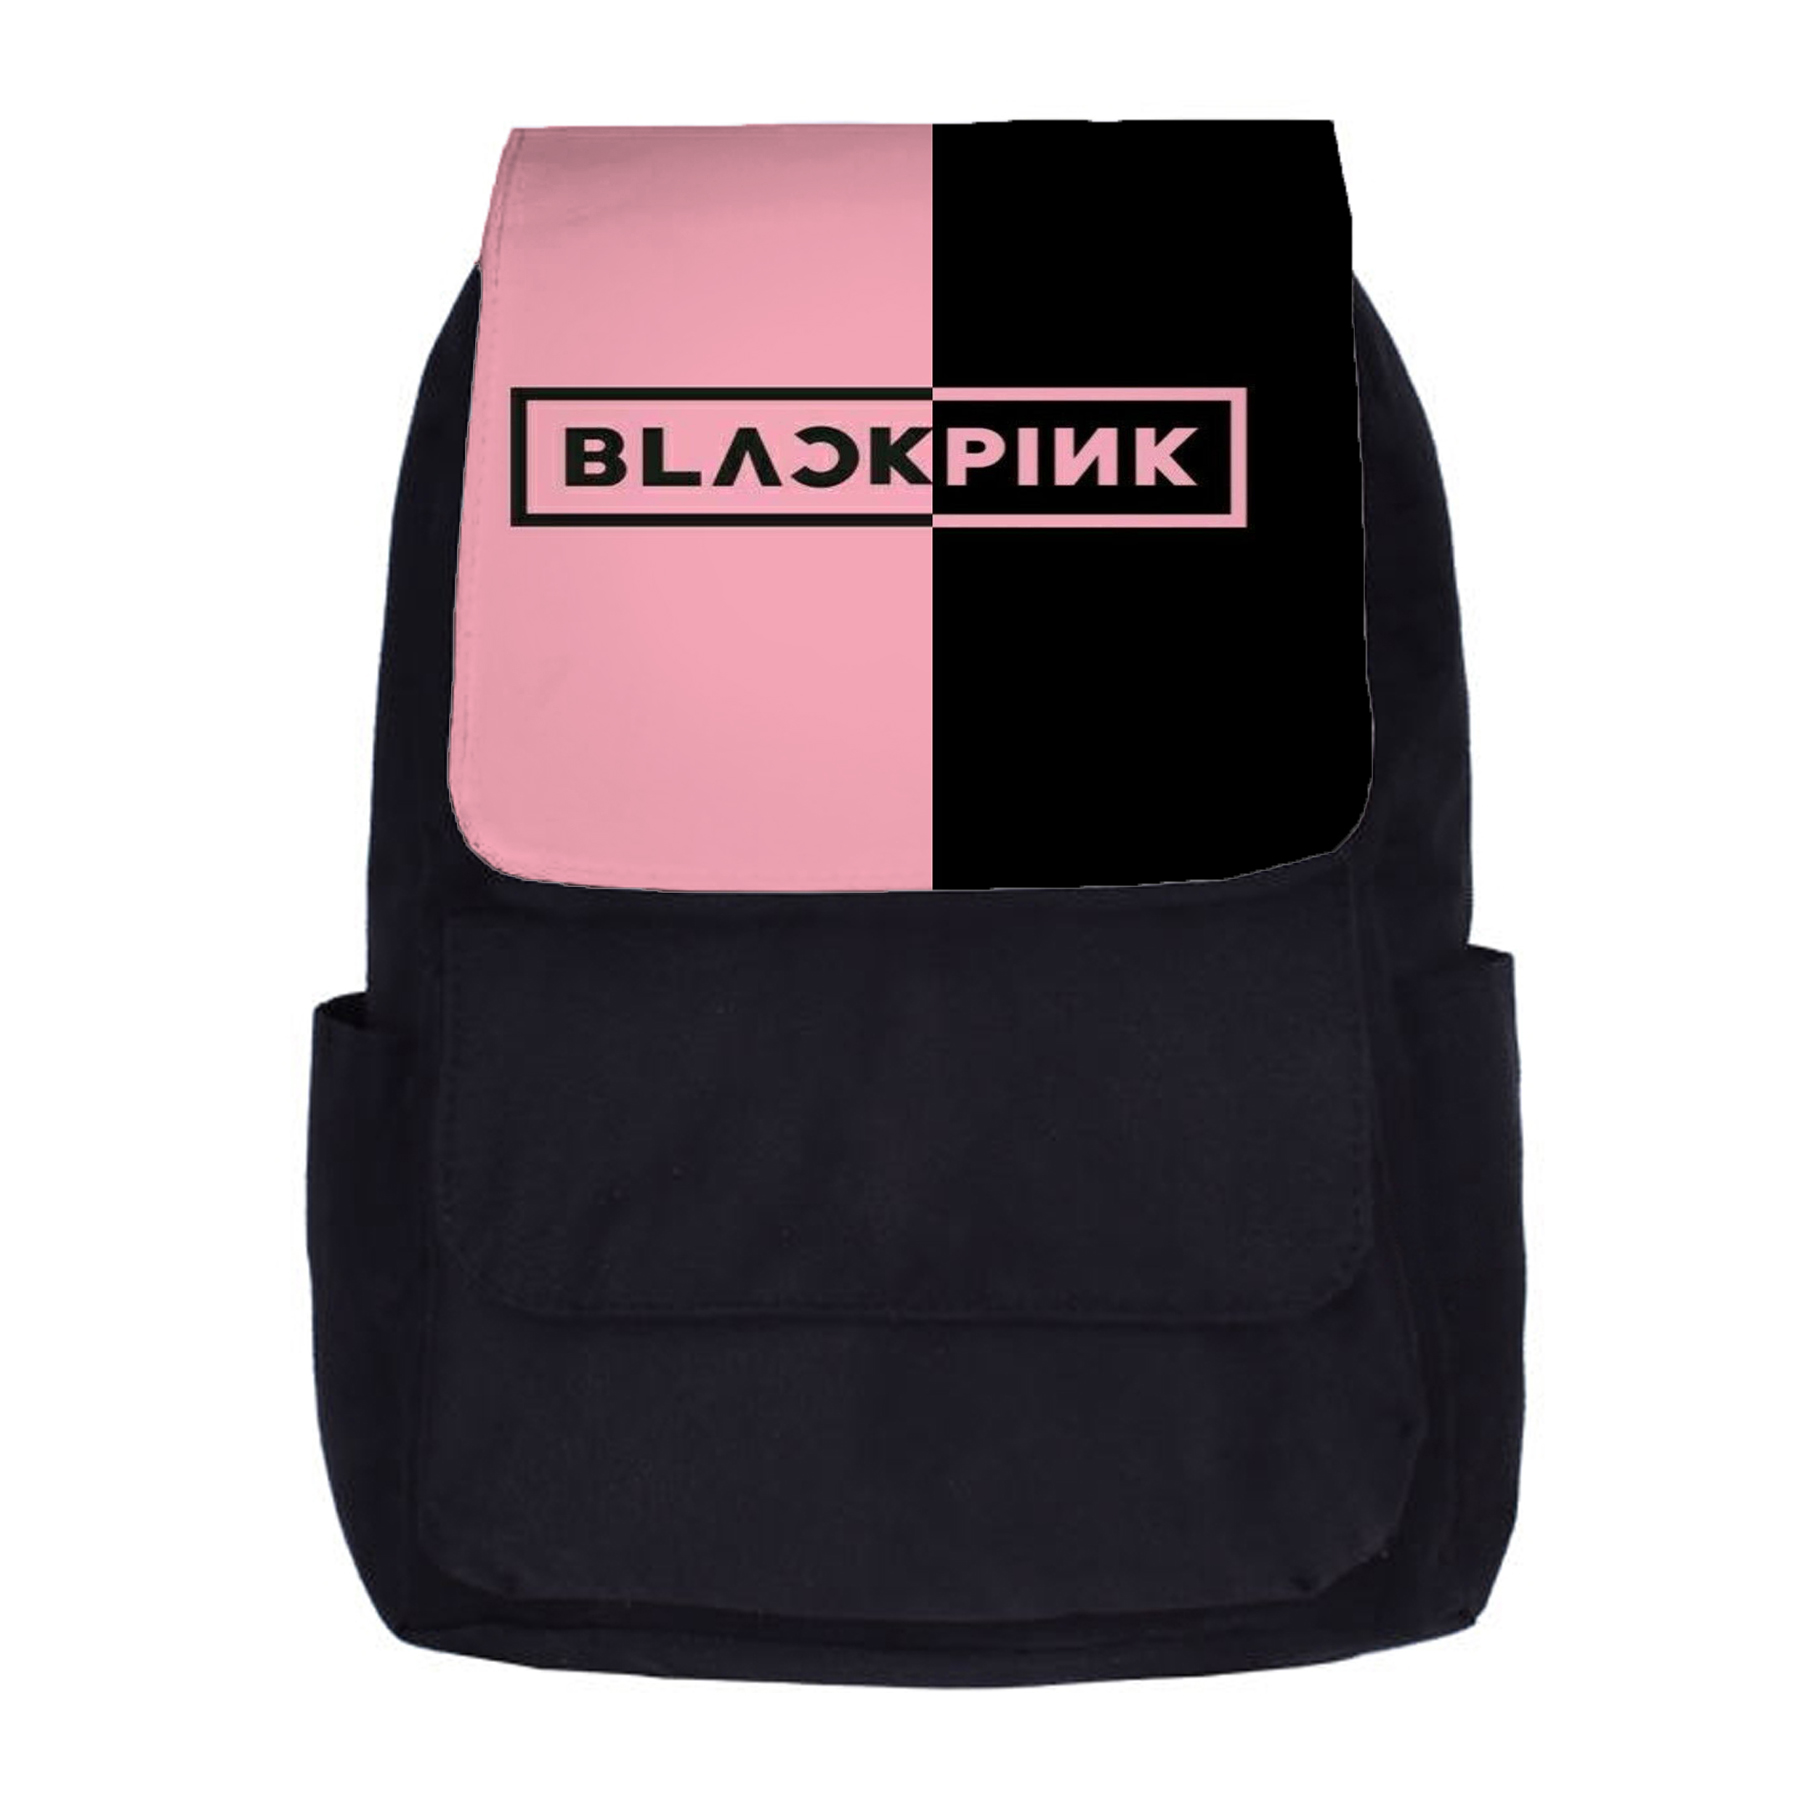 کوله پشتی دخترانه طرح black pink کد kp296